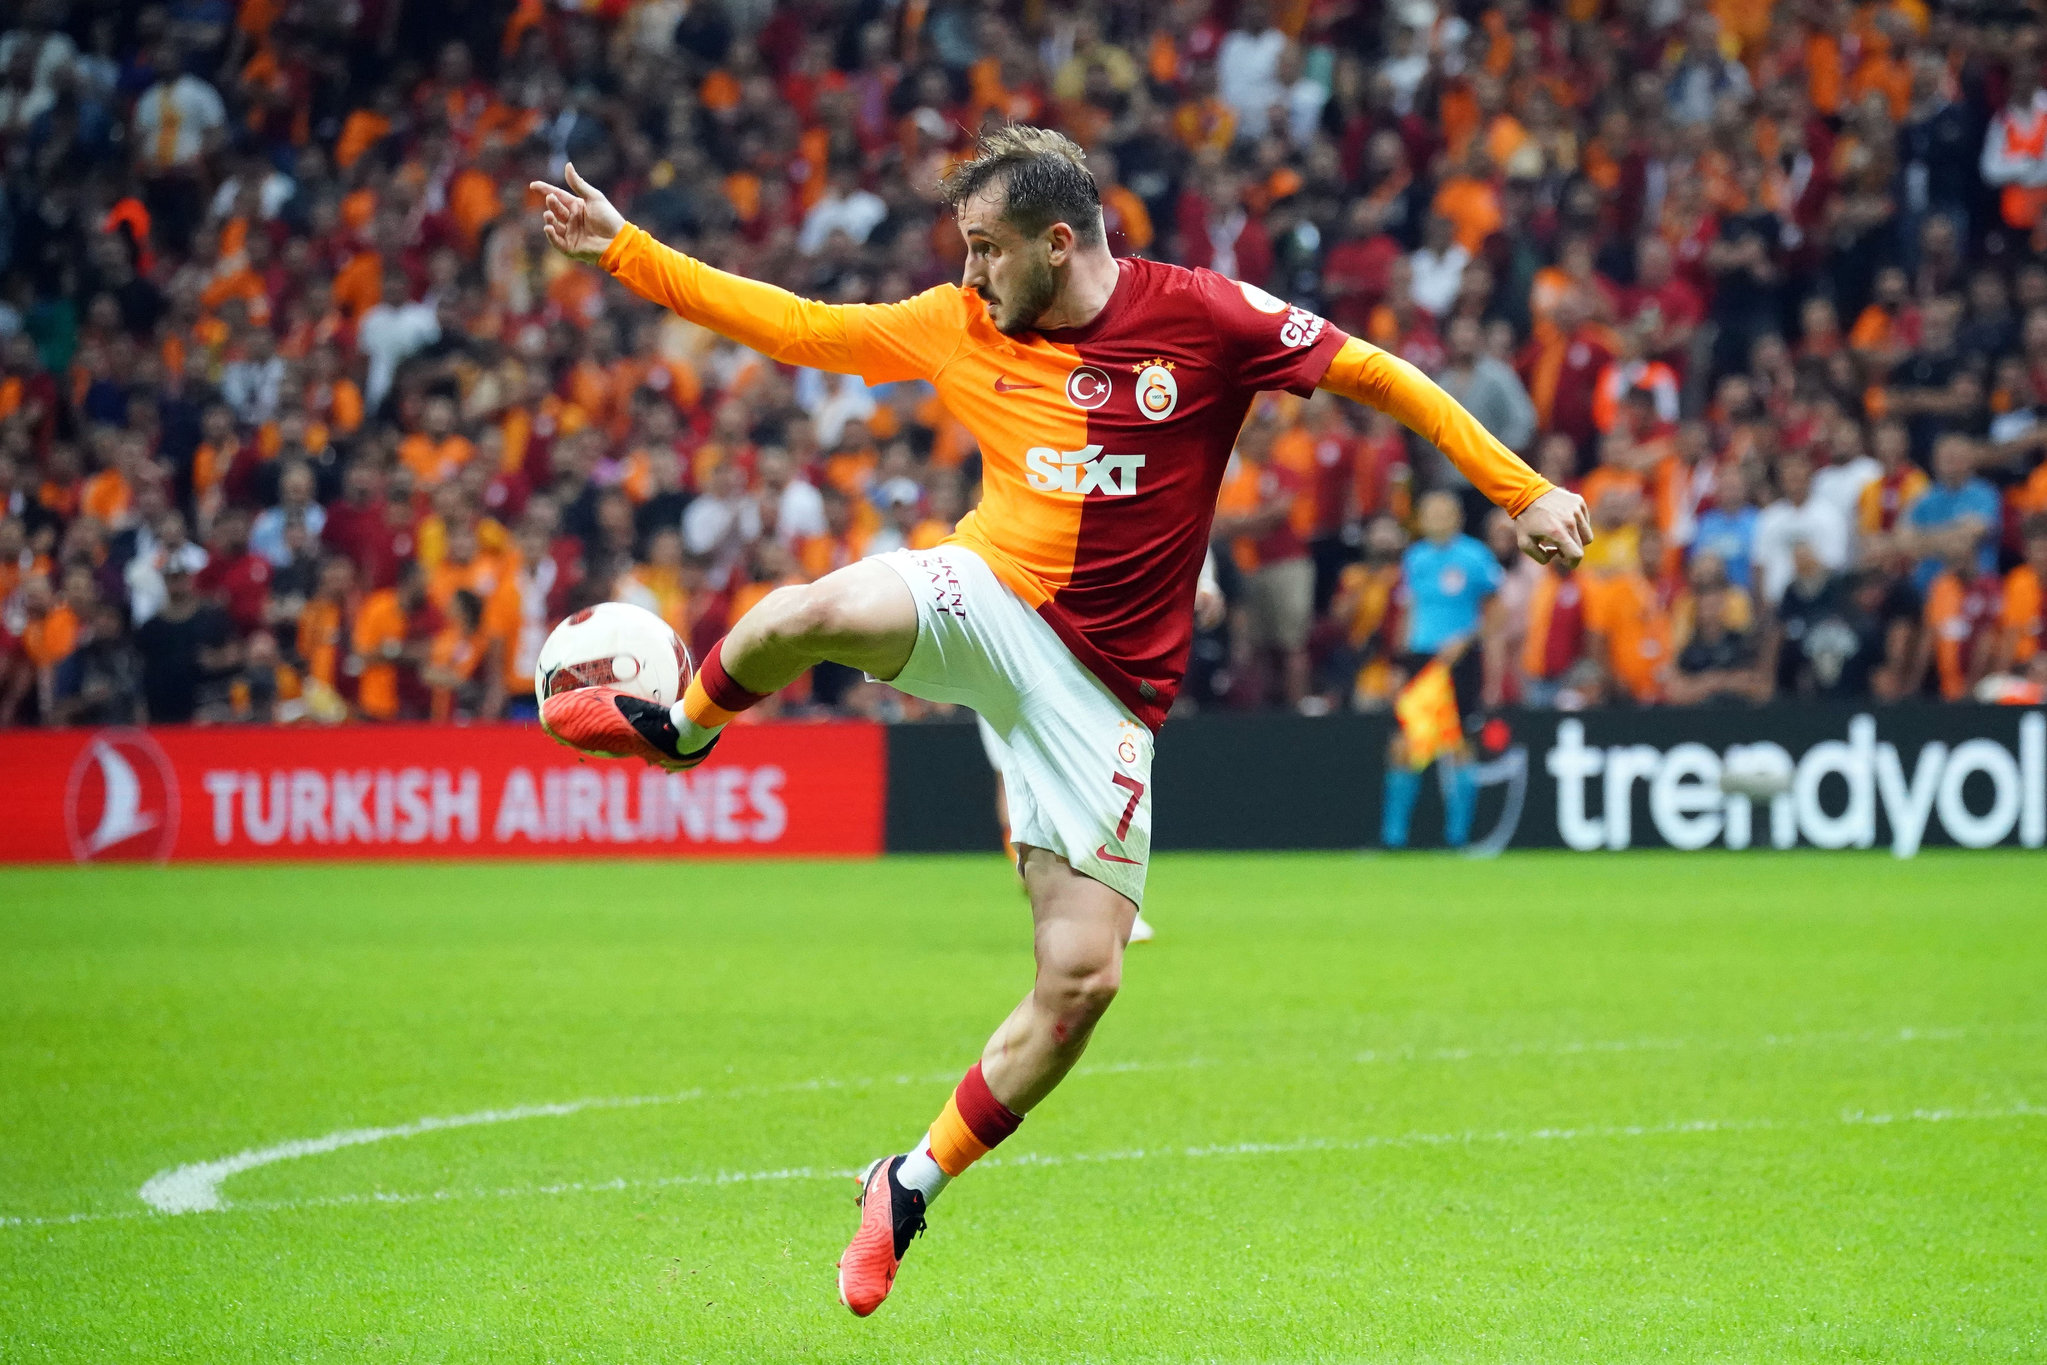 TRANSFER HABERİ: Galatasaray’dan tarihi satış! İşte yeni takımı ve bonservis ücreti